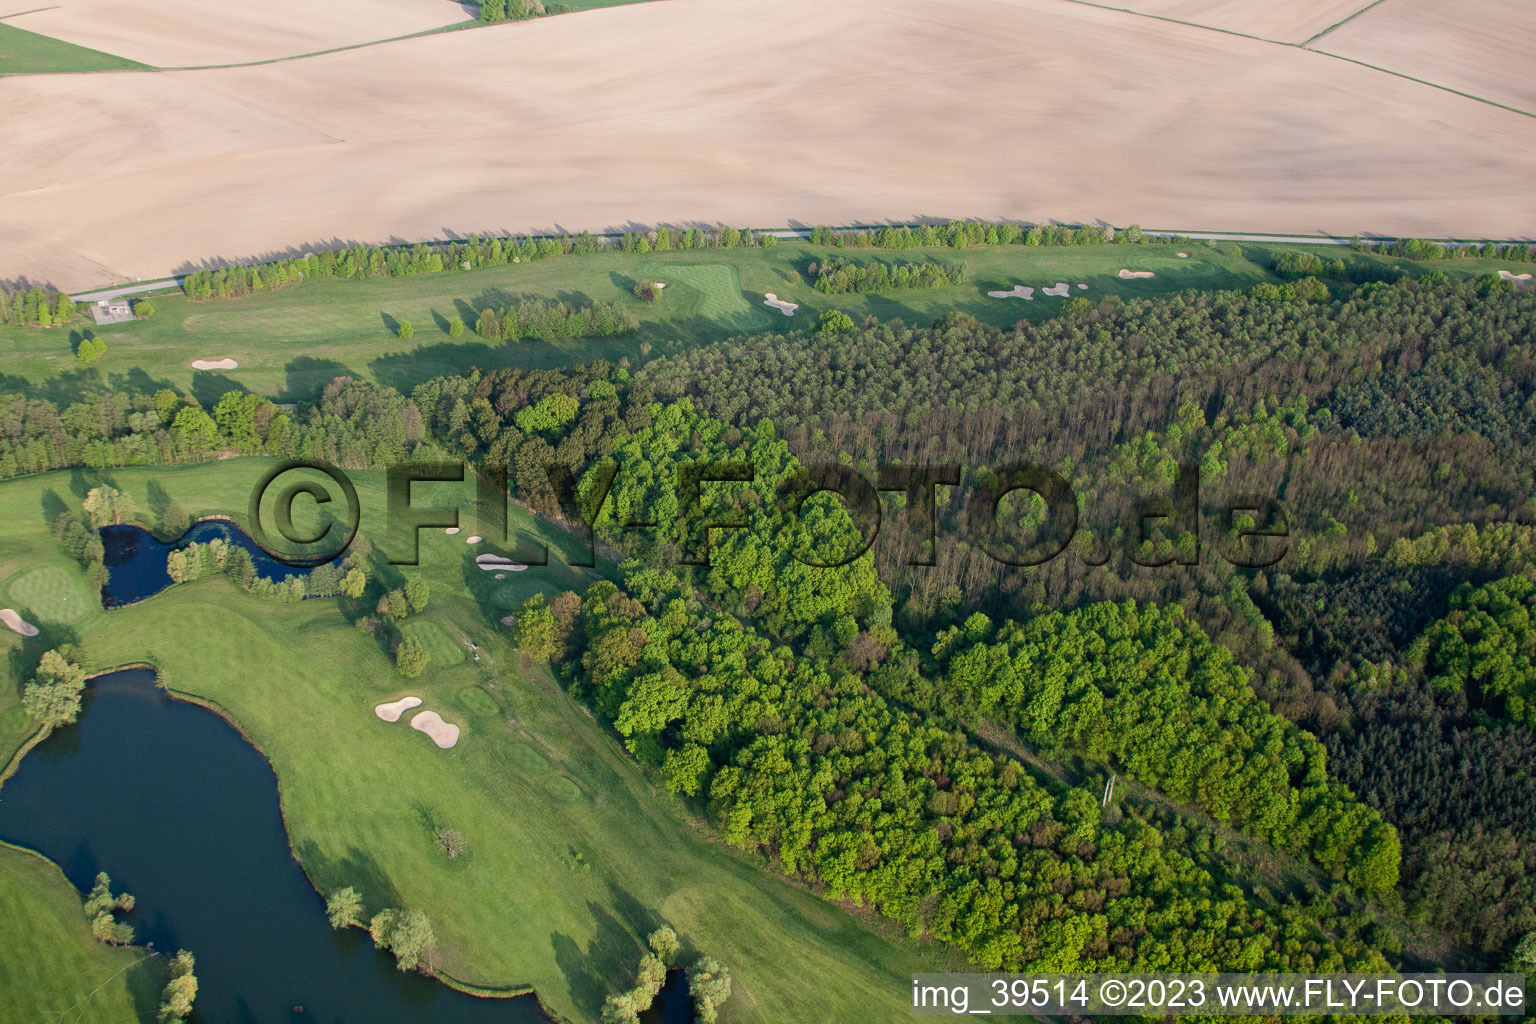 Golf club Soufflenheim Baden-Baden in Soufflenheim in the state Bas-Rhin, France from a drone